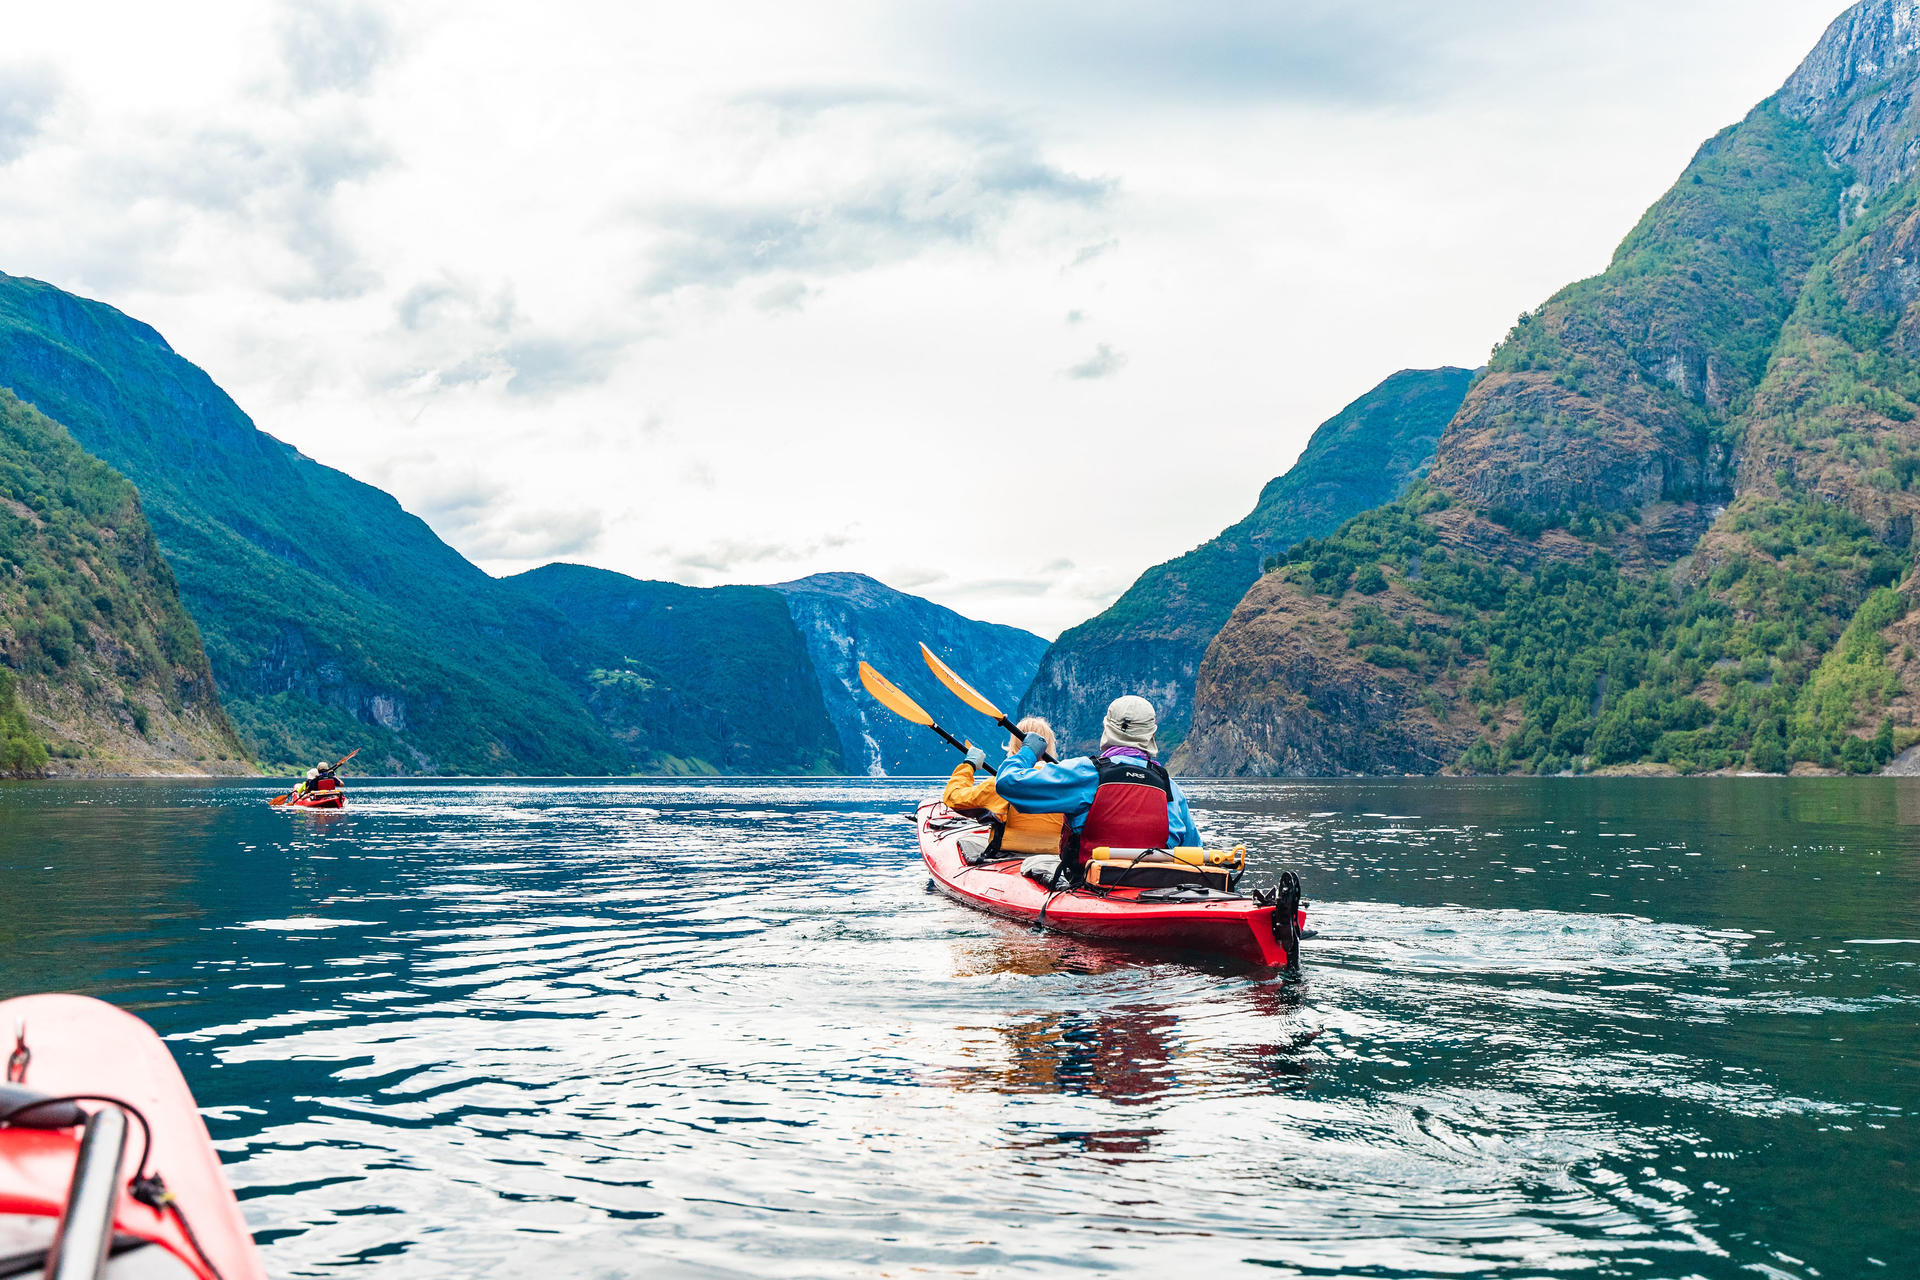 Hiking biking and kayaking in Fjord Norway-2018@ThorHåkonUlstad (30)